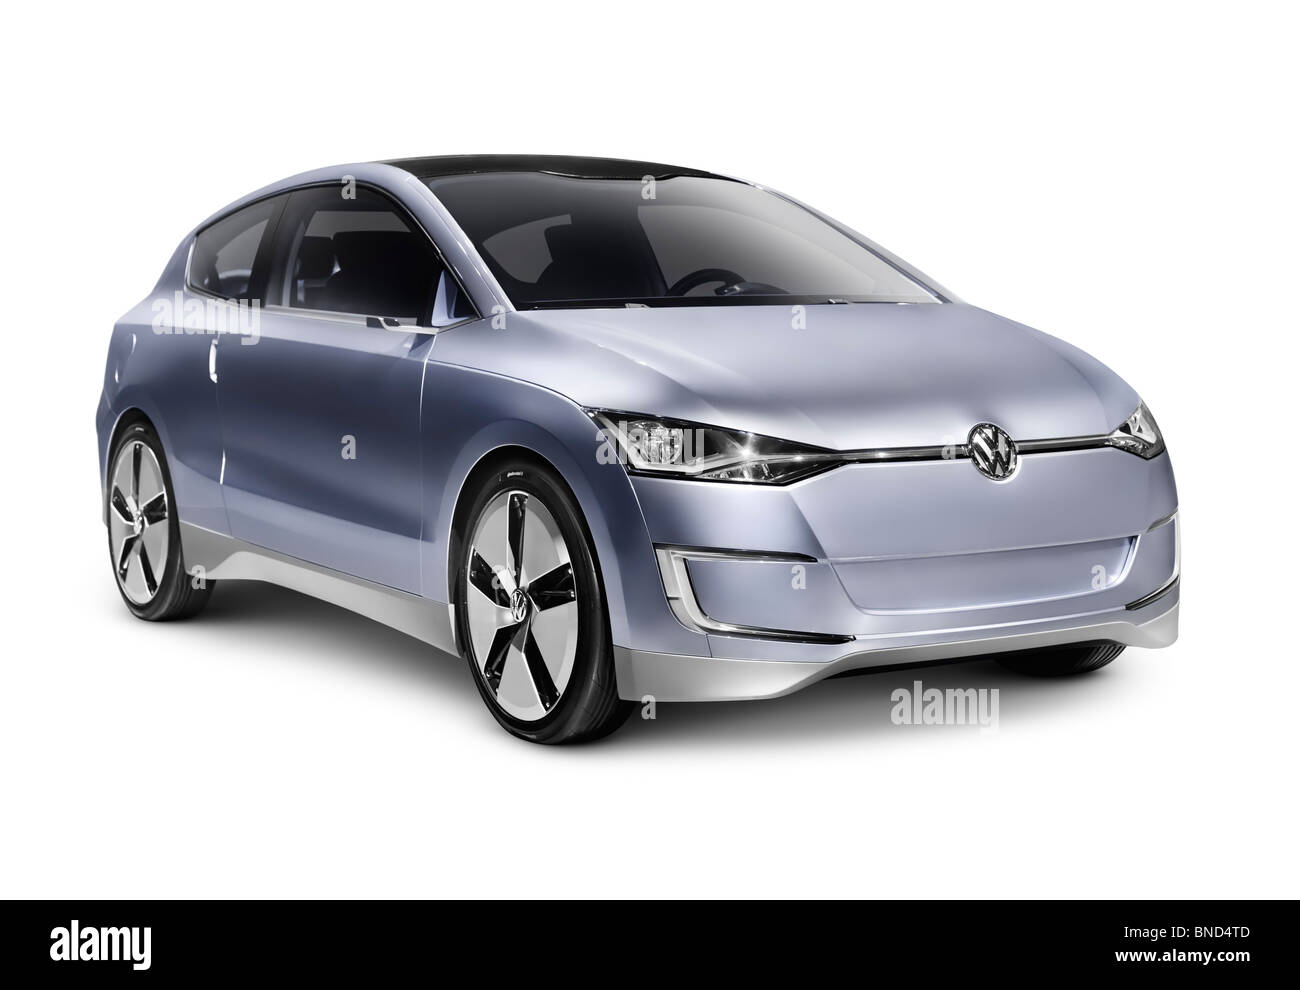 Führerschein erhältlich unter MaximImages.com - 2010 Volkswagen up! Lite Concept Hybrid Diesel sparsamer Stadtwagen. Isoliert mit Beschneidungspfad auf weißem Ba Stockfoto